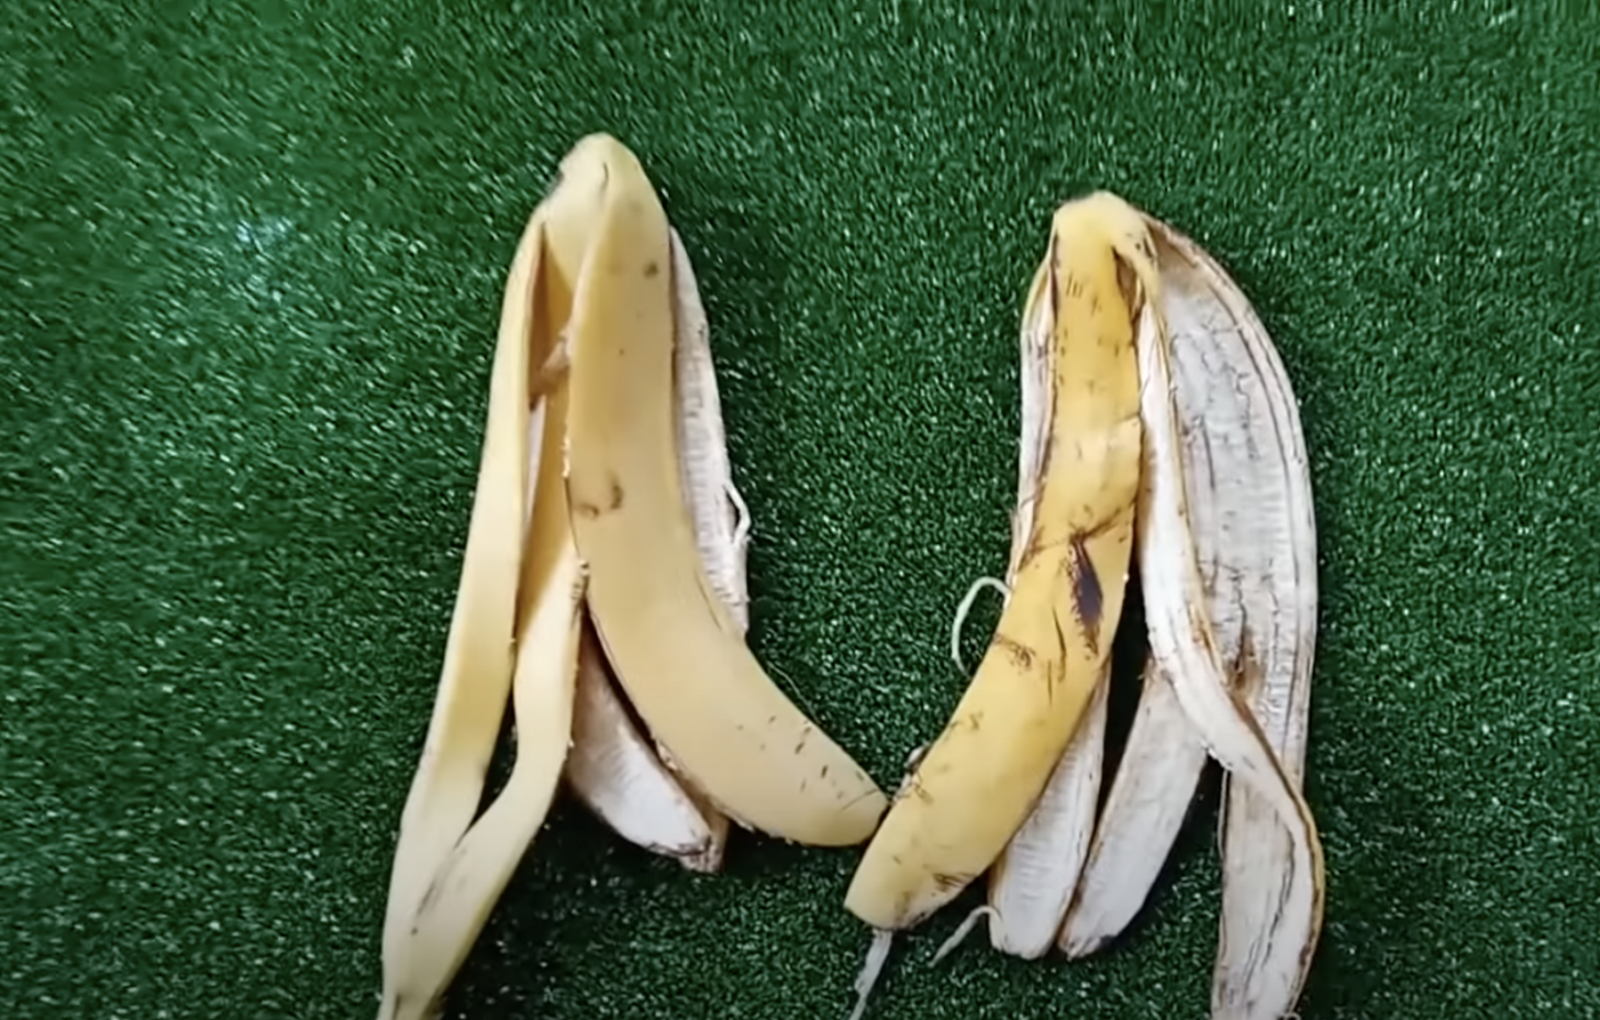 бананова кора